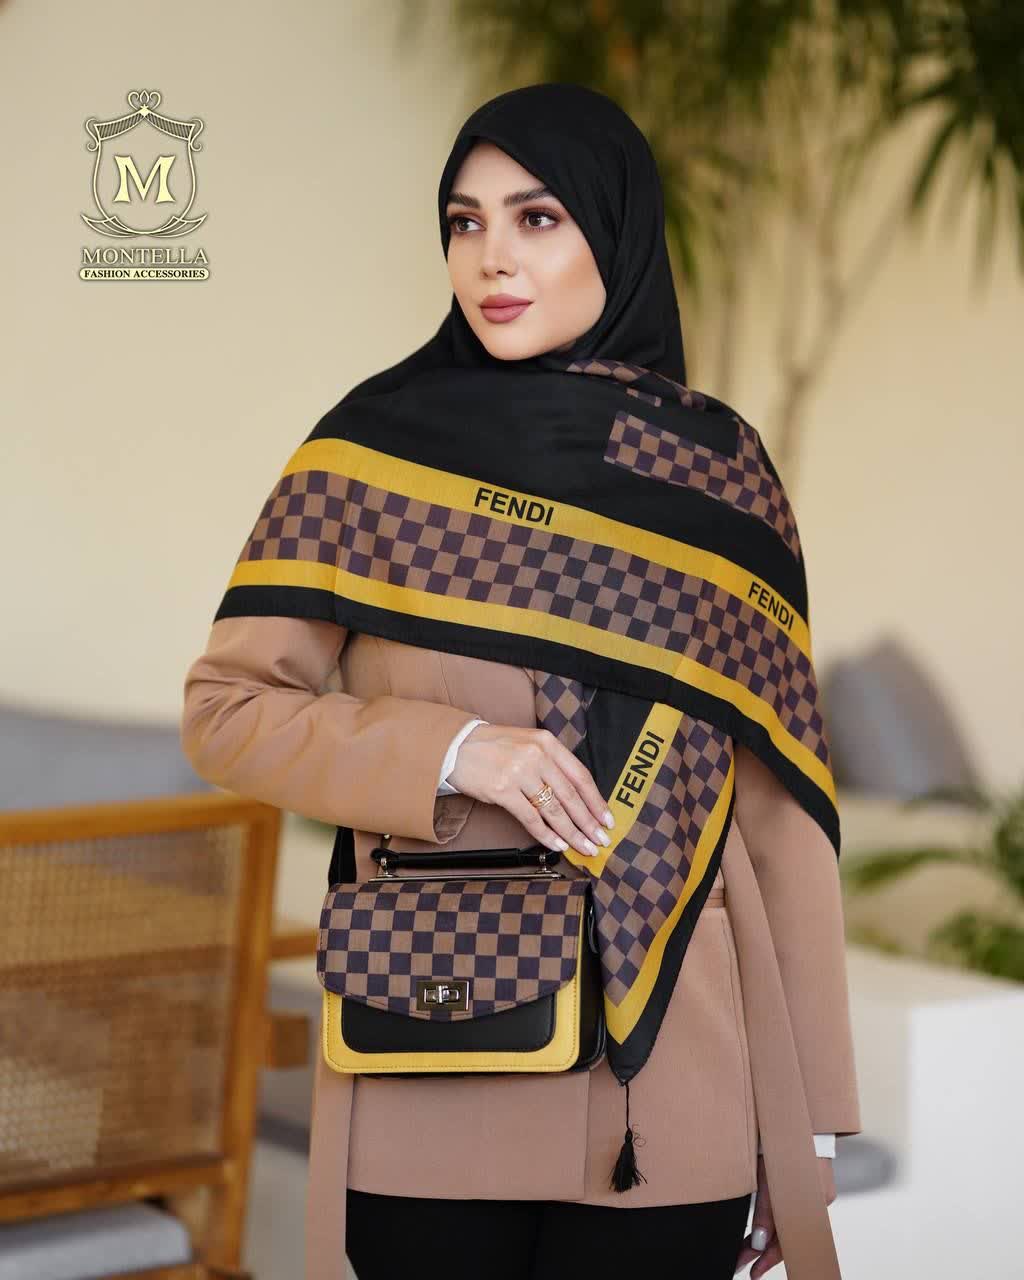 ست کیف و روسری زنانه طرح فندی چهارخانه رنگ مشکی با کیف دسته چرمی کیفیت عالی با ارسال رایگان کد mo499